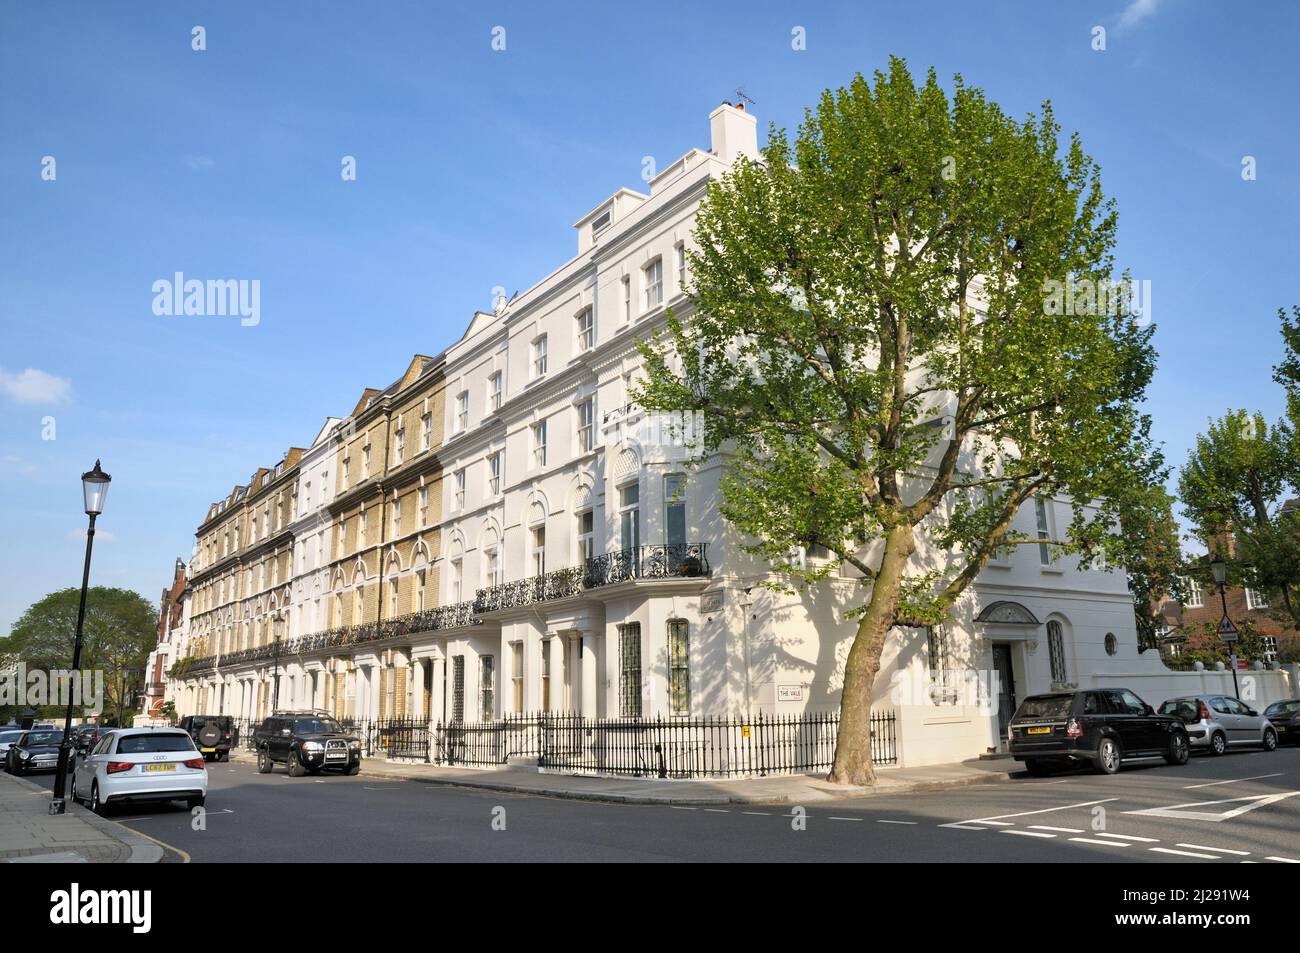 Architektur an der Kreuzung der grünen Wohnviertel von Elm Park Road und der Vale, Chelsea, London SW3, England, Großbritannien Stockfoto